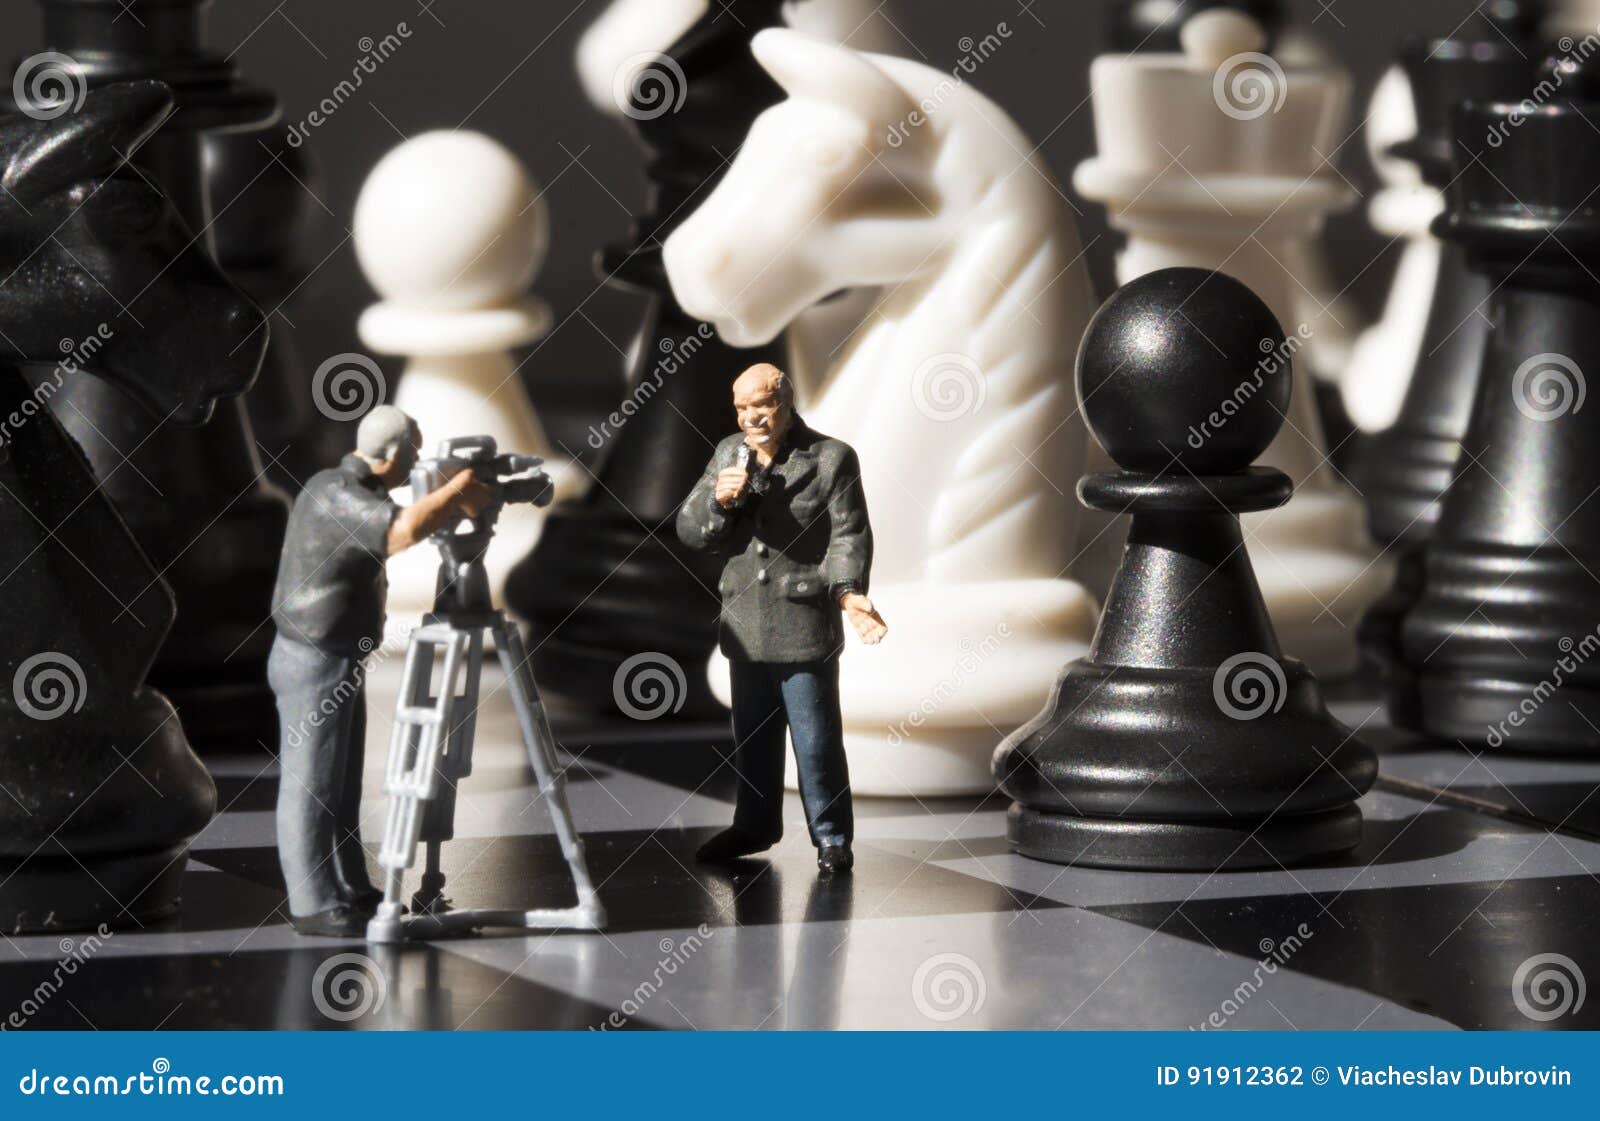 Noticias de ajedrez